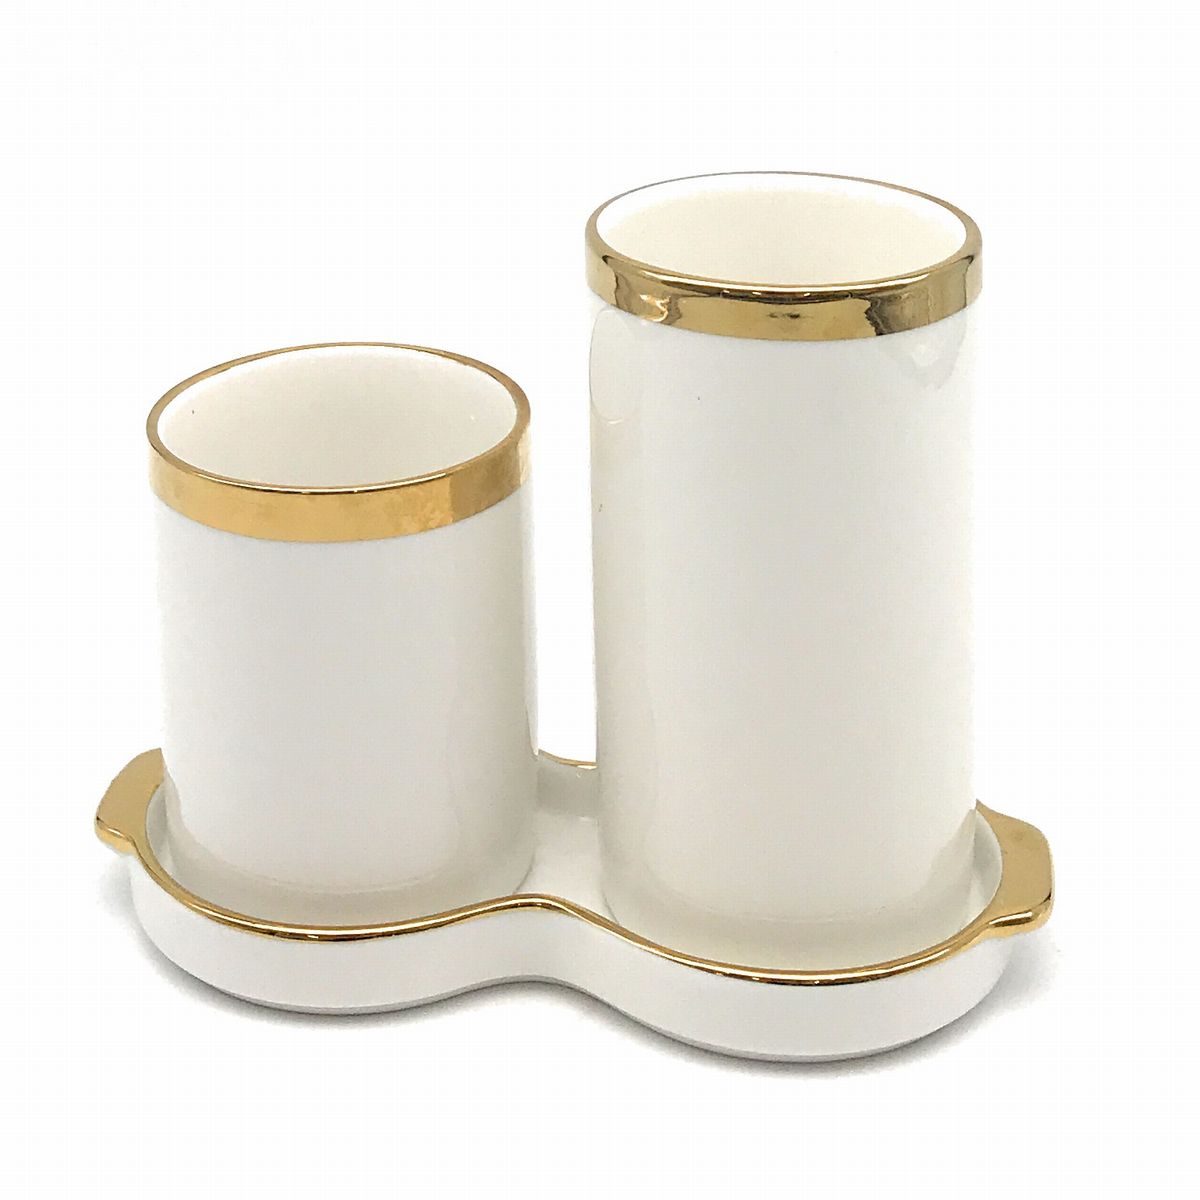 【訳あり】箸立て ゴールドカラーの縁取り バイカラー スタイリッシュ 大小2個セット 水受け皿付き 陶器製 (ホワイト)